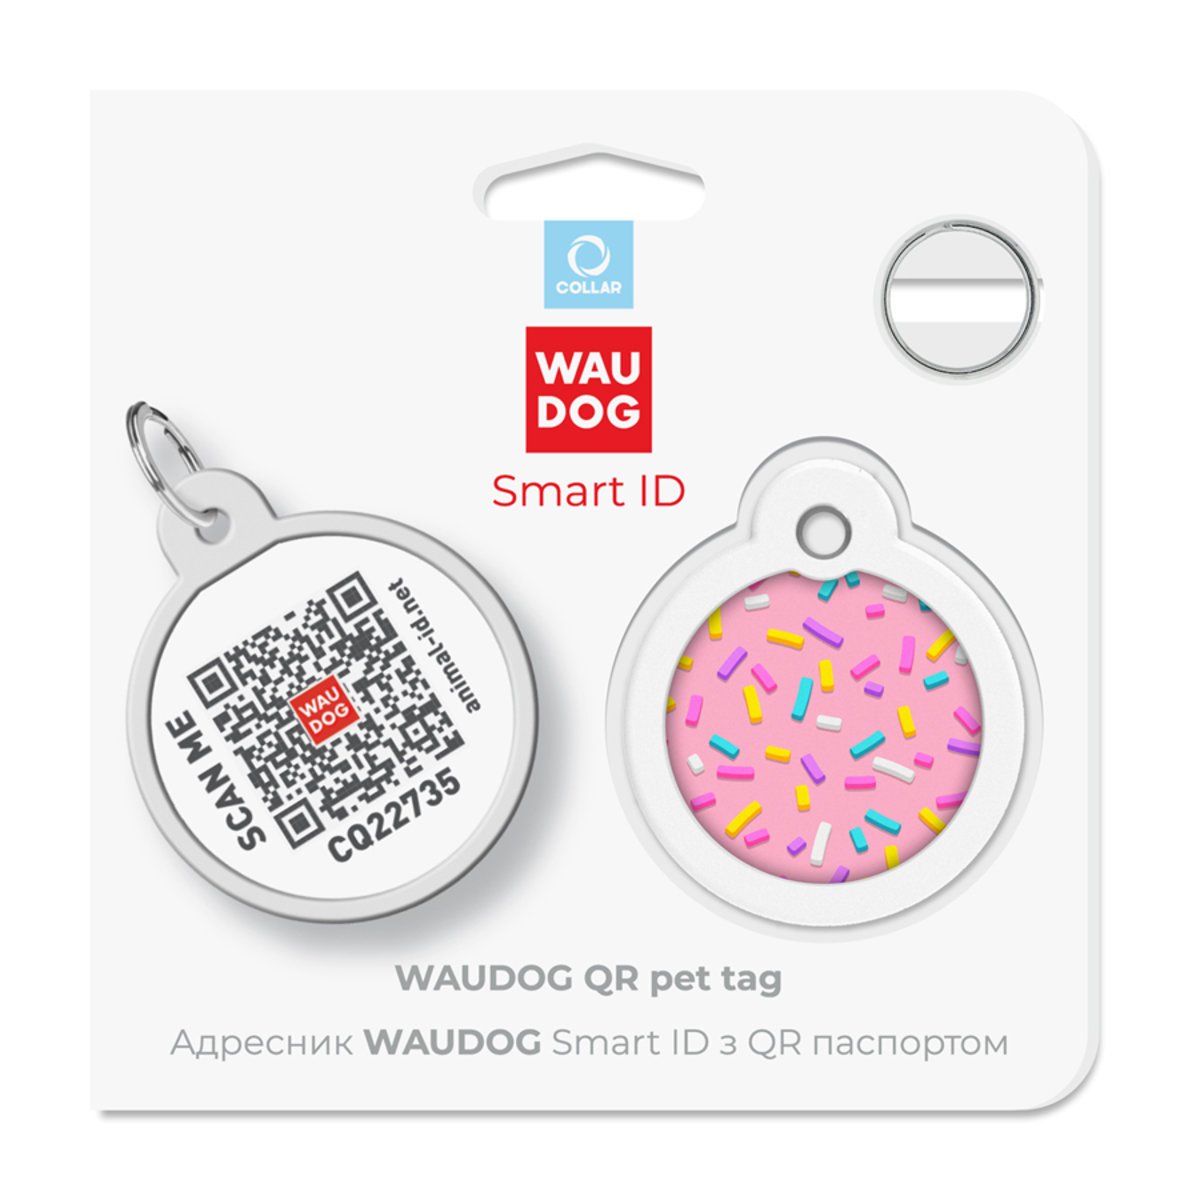 Адресник для собак и кошек Waudog Smart ID с QR паспортом, Маршмеллоу, M, диаметр 30 мм - фото 5